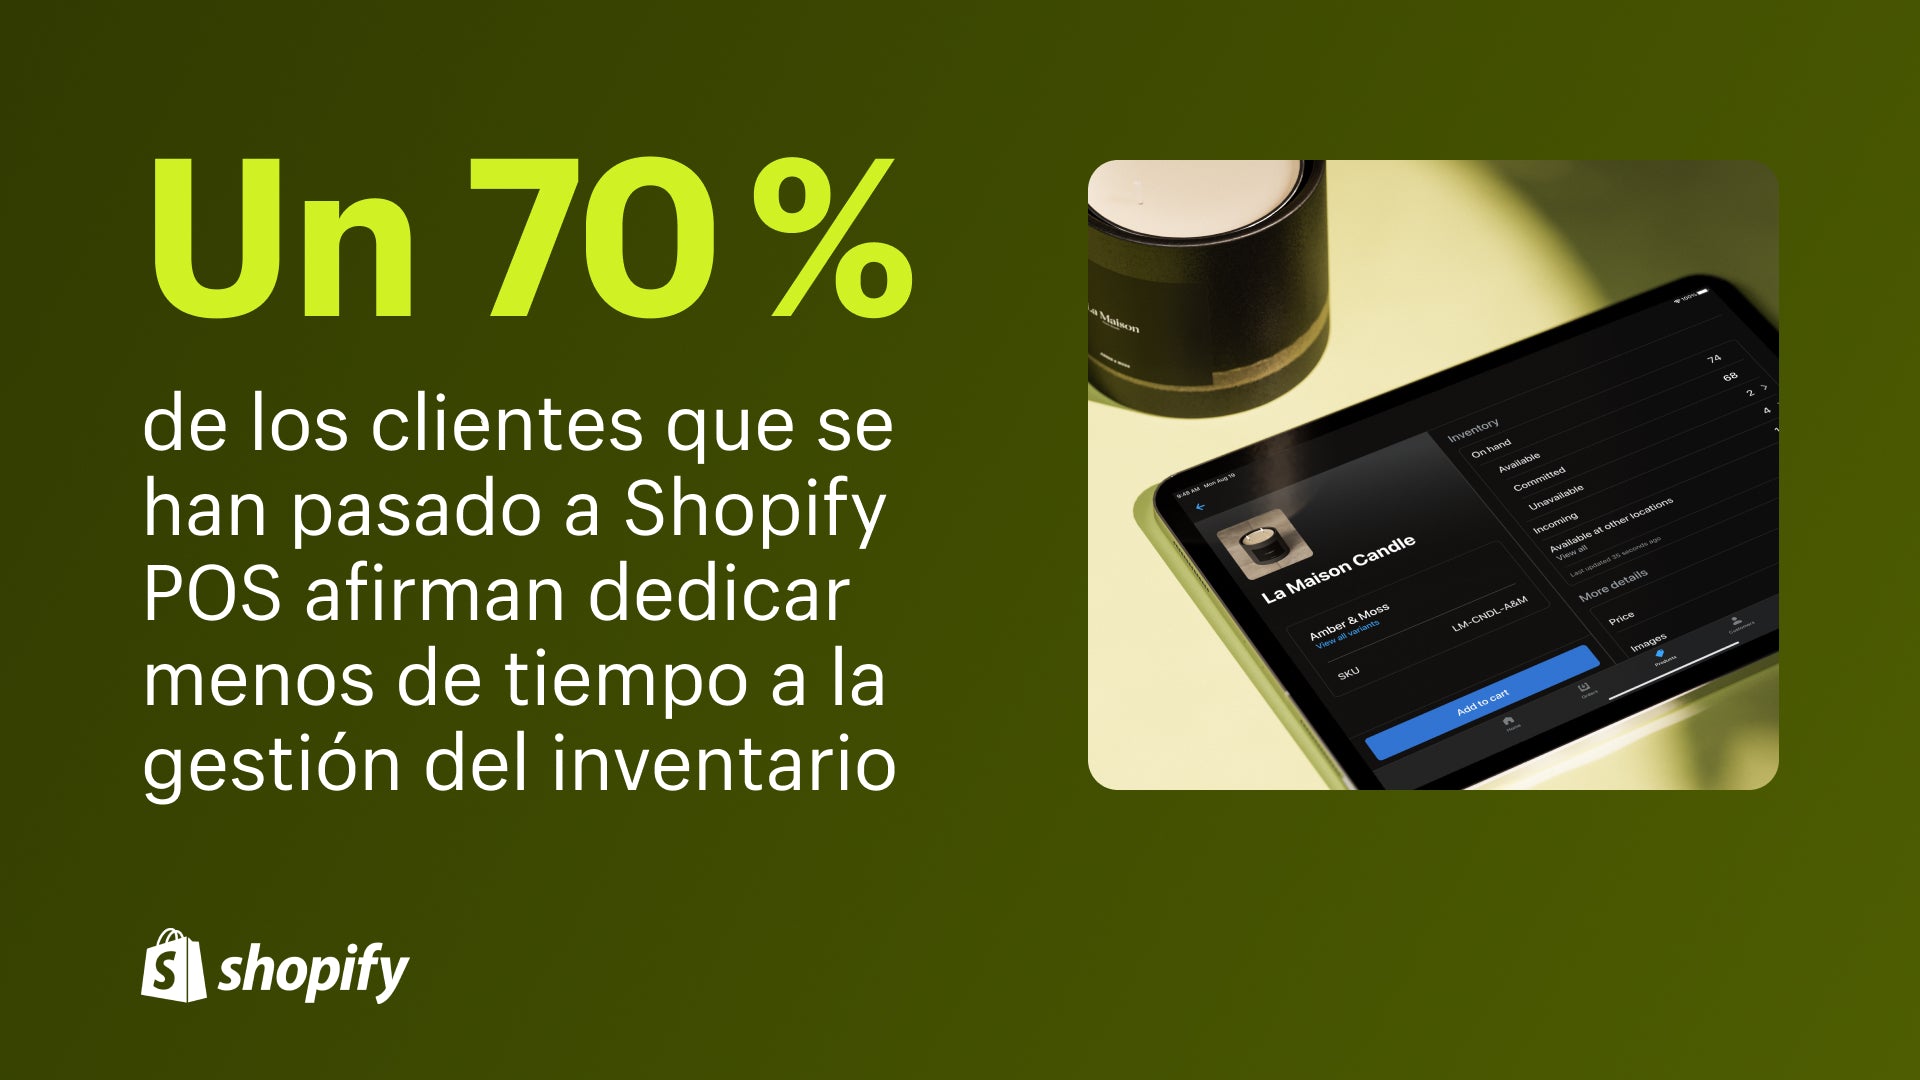 Imagen de Shopify POS en un ipad que muestra cómo agregar una vela al carrito con un dato que dice: "El 70% de los clientes que cambiaron a Shopify POS informan que dedican menos tiempo a la gestión de inventario".